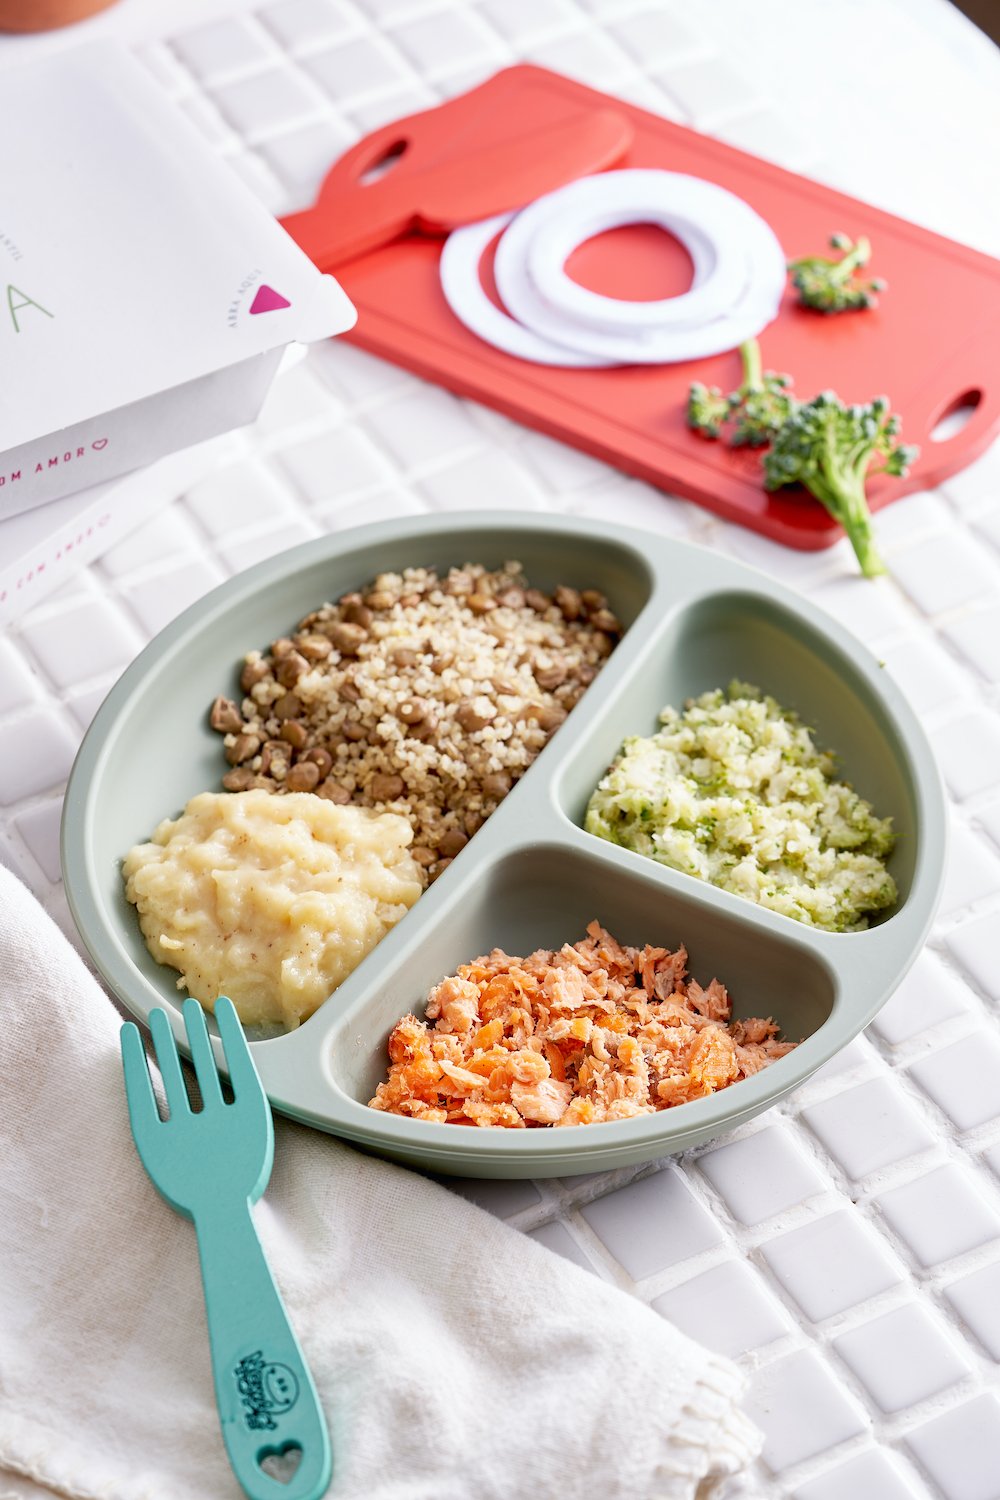 Salmão, purê de batata, quinoa com lentilha, brócolis e couve flor - 220g